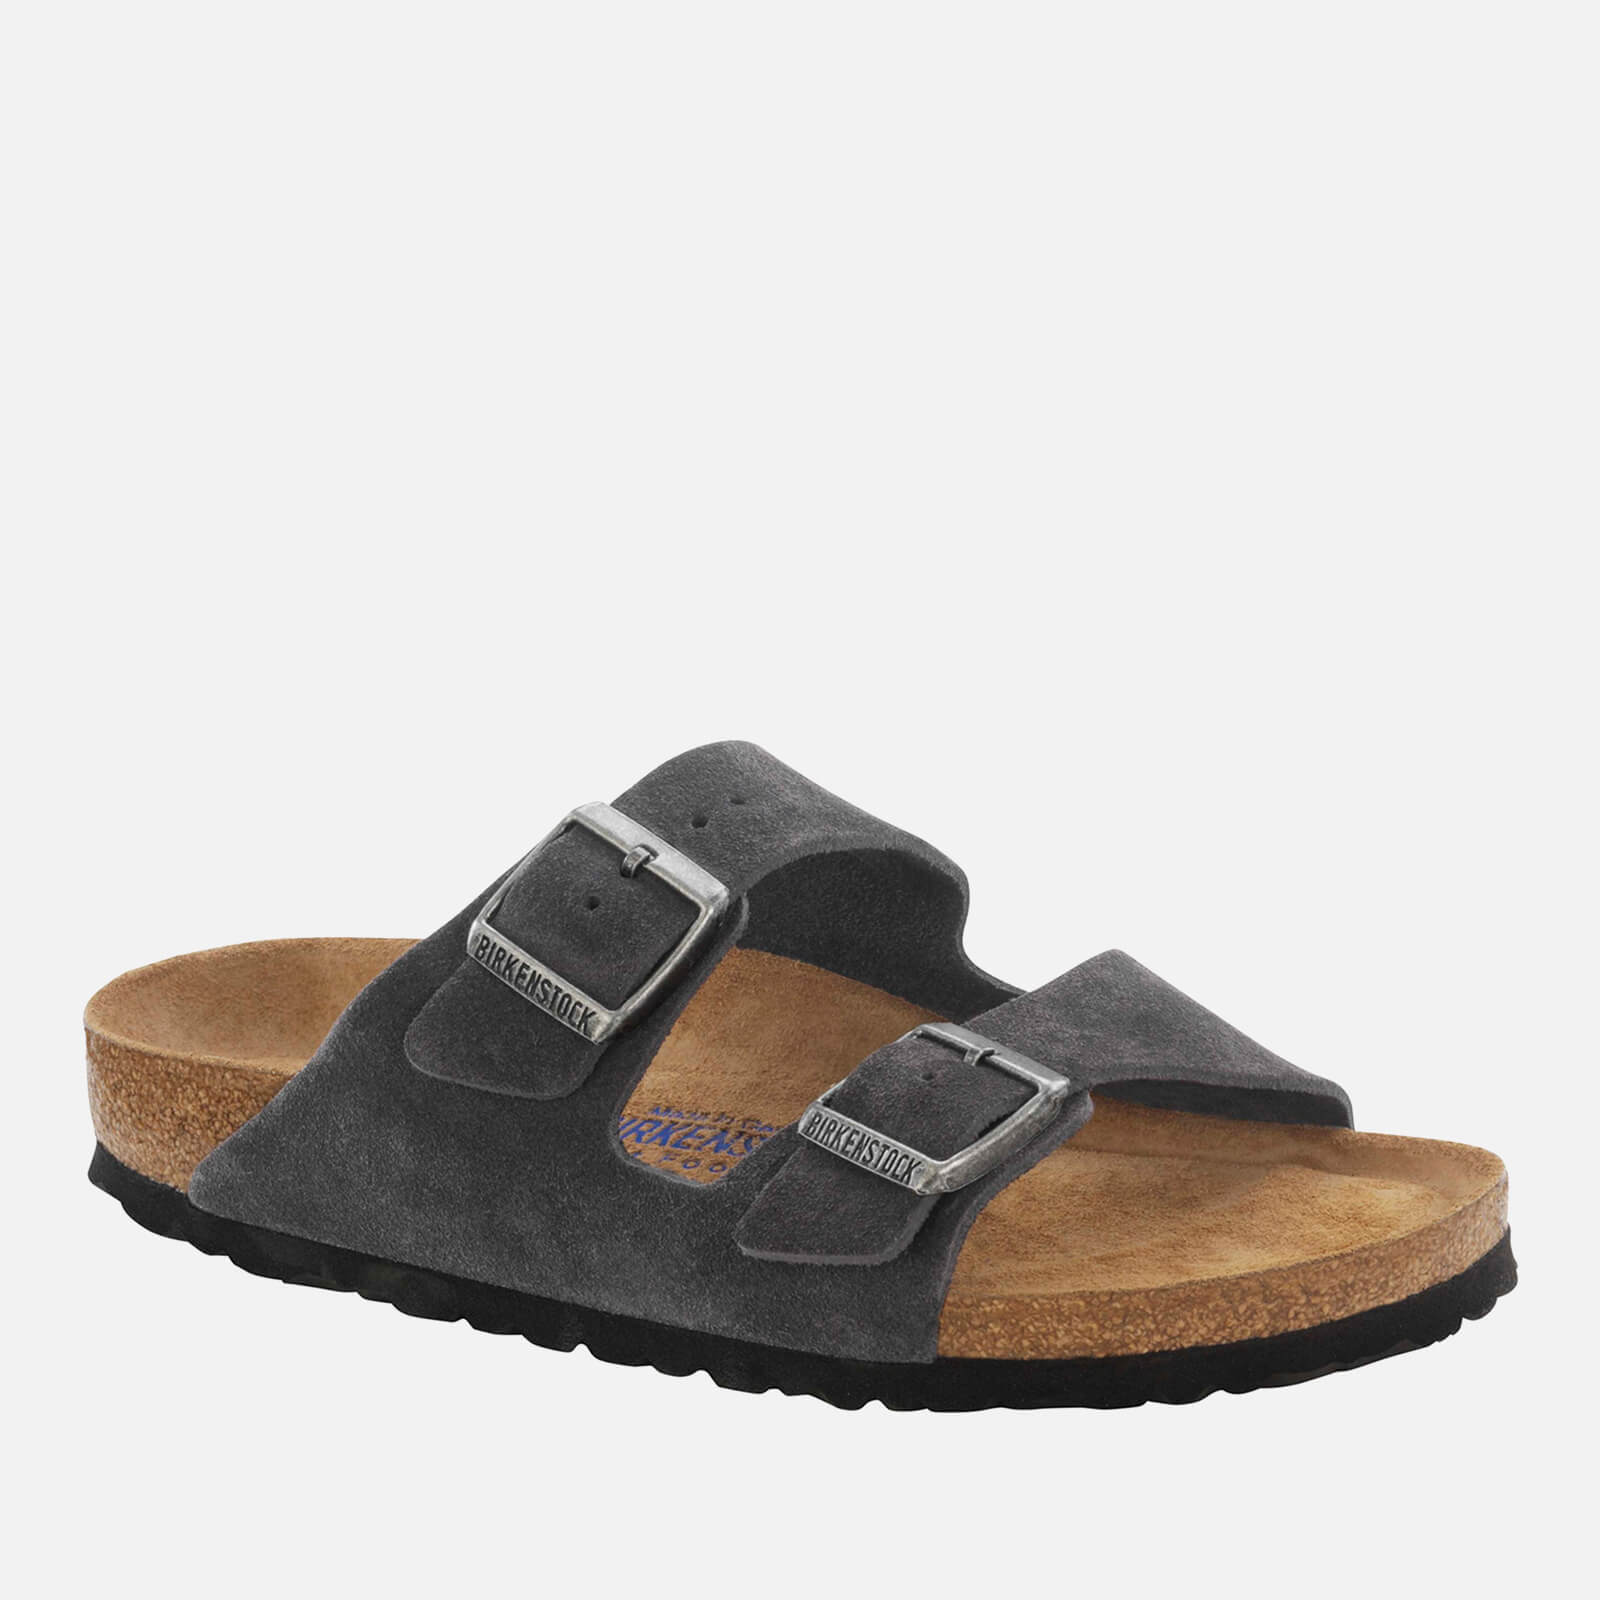 Birkenstock Men’s Arizona Suede Double Strap Sandals